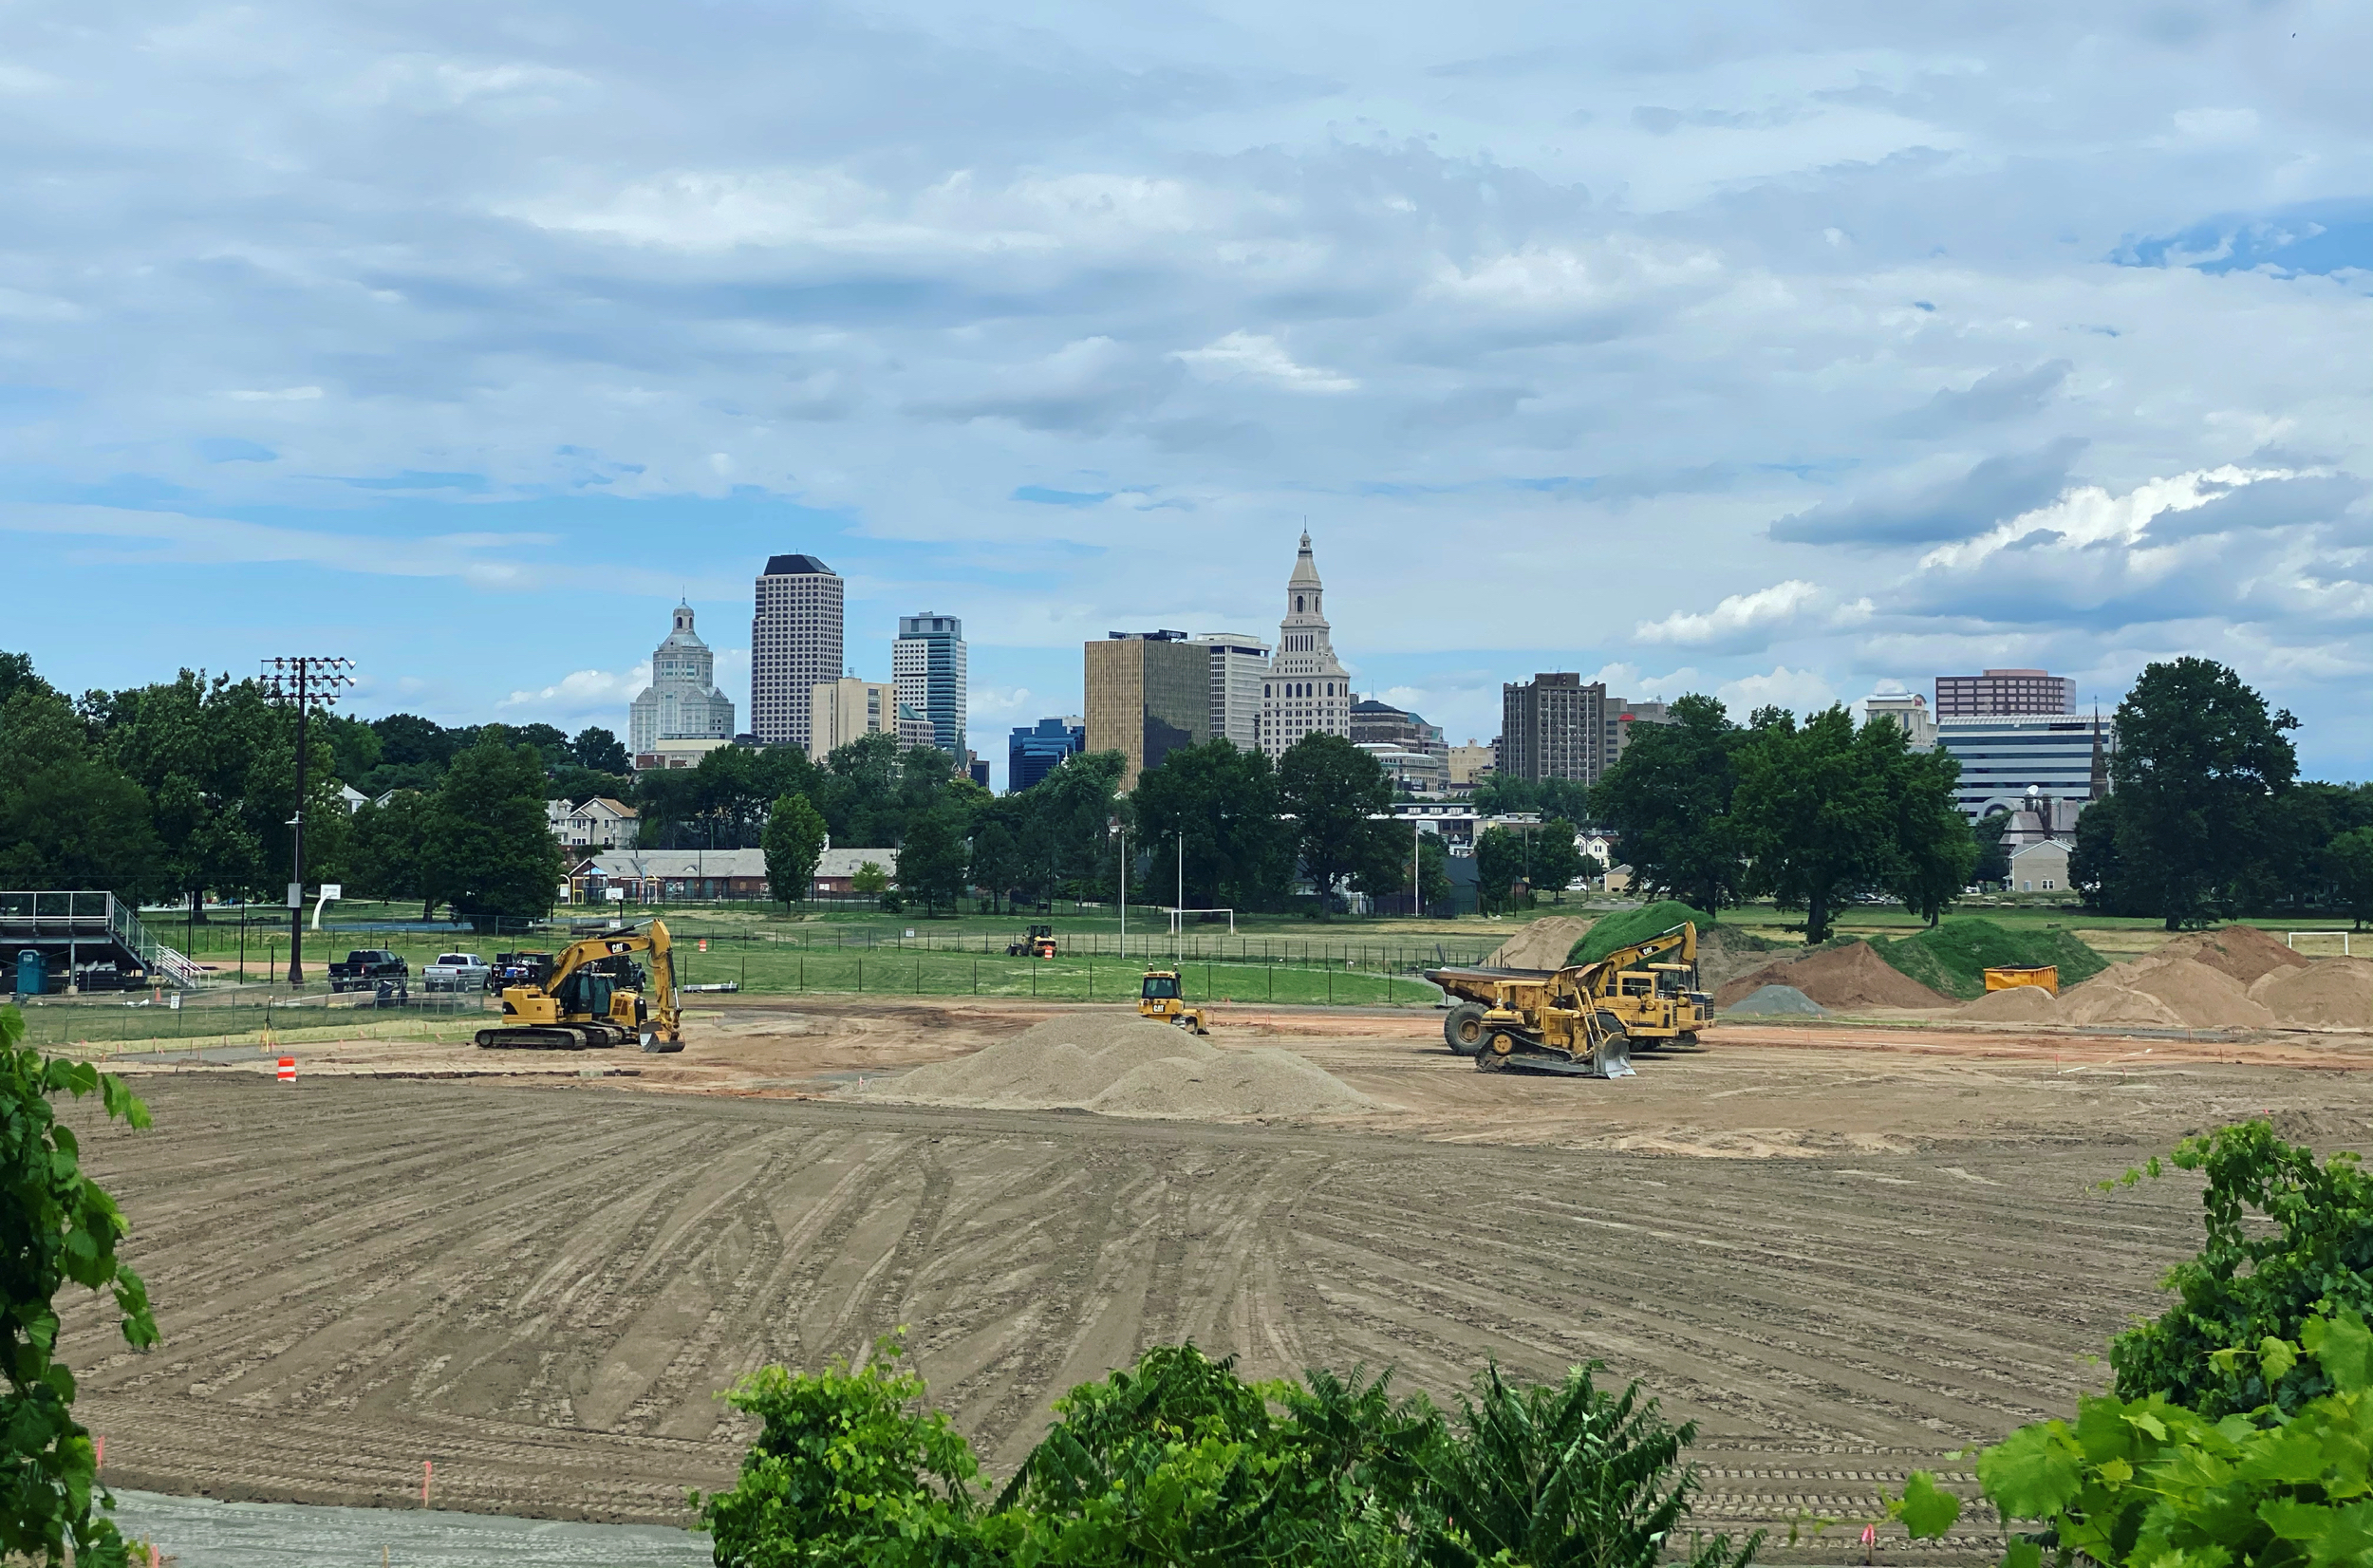 Construction at Johnny Taylor Field, Colt Park, Hartford, 2020.